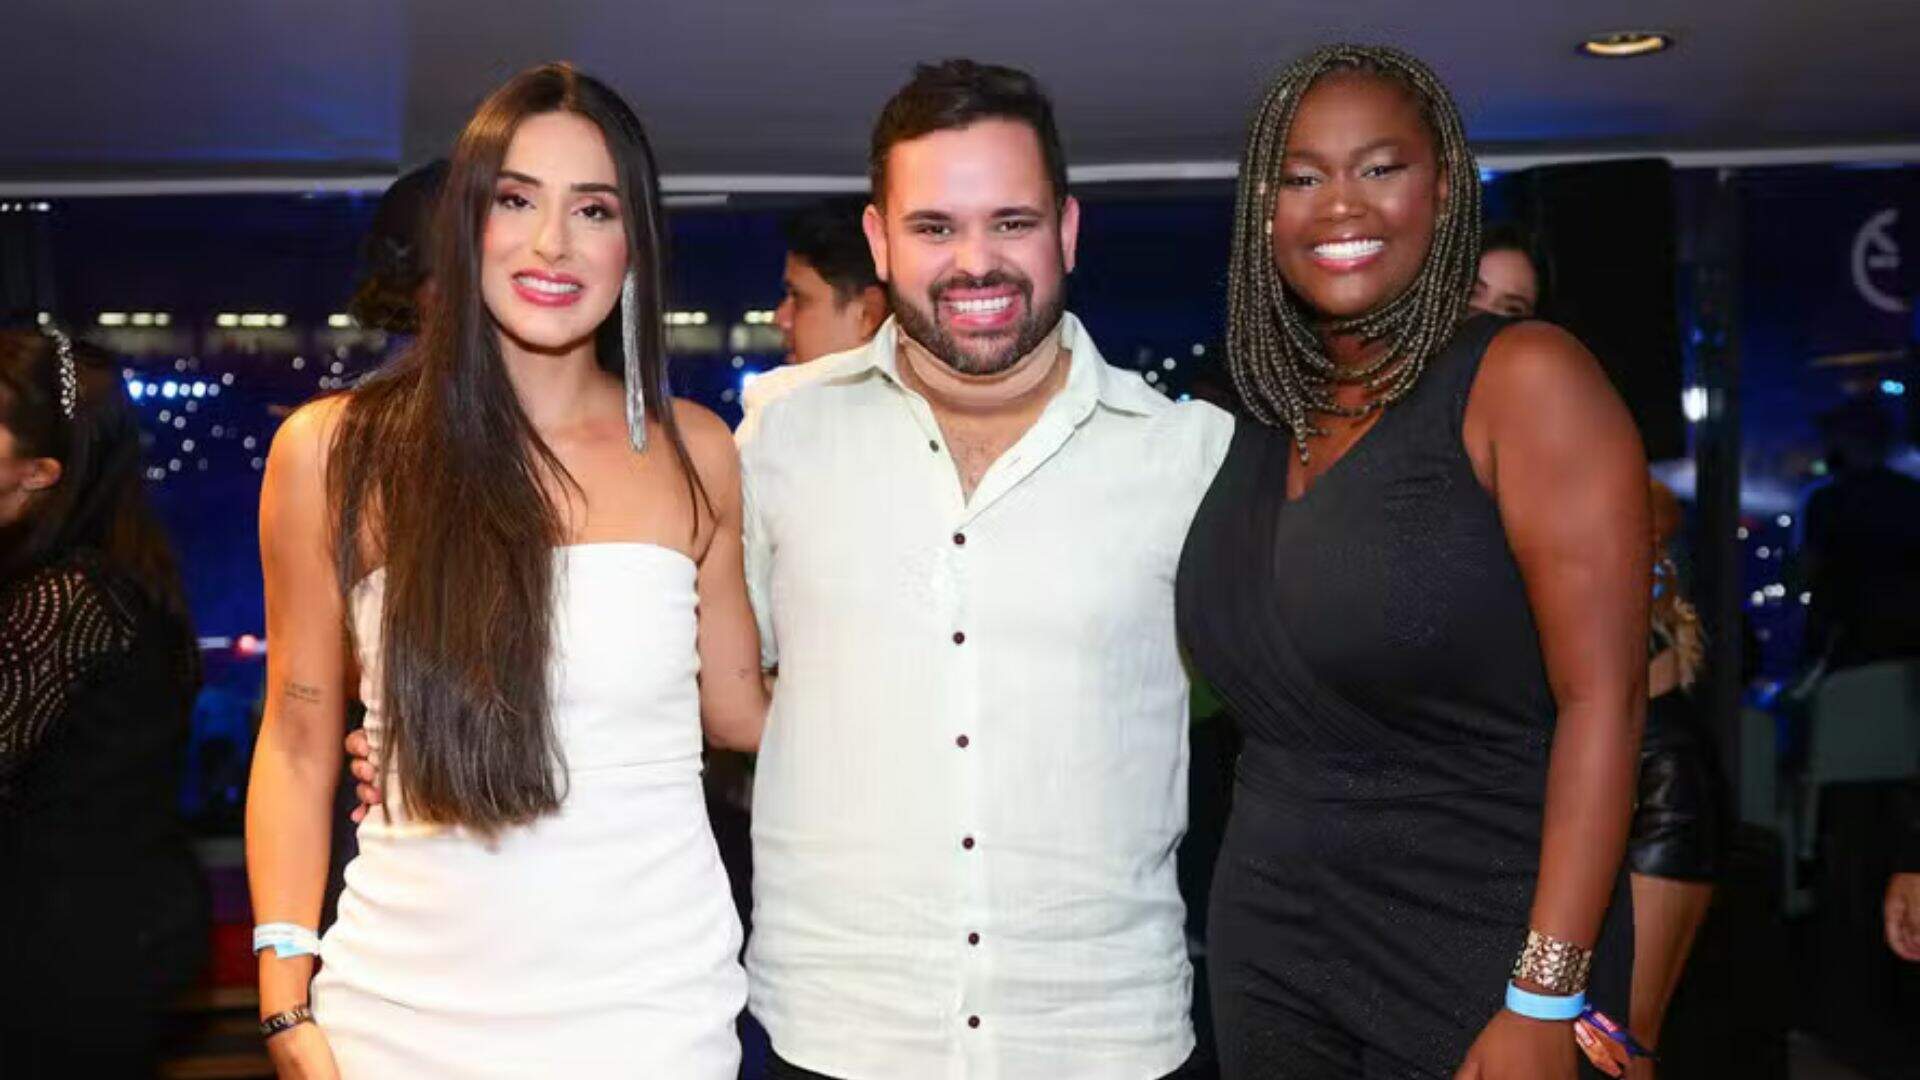 Encontro de ex-BBBs! Deniziane, Michel e Raquele curtem show de Léo Santana em BH; veja fotos - Metropolitana FM